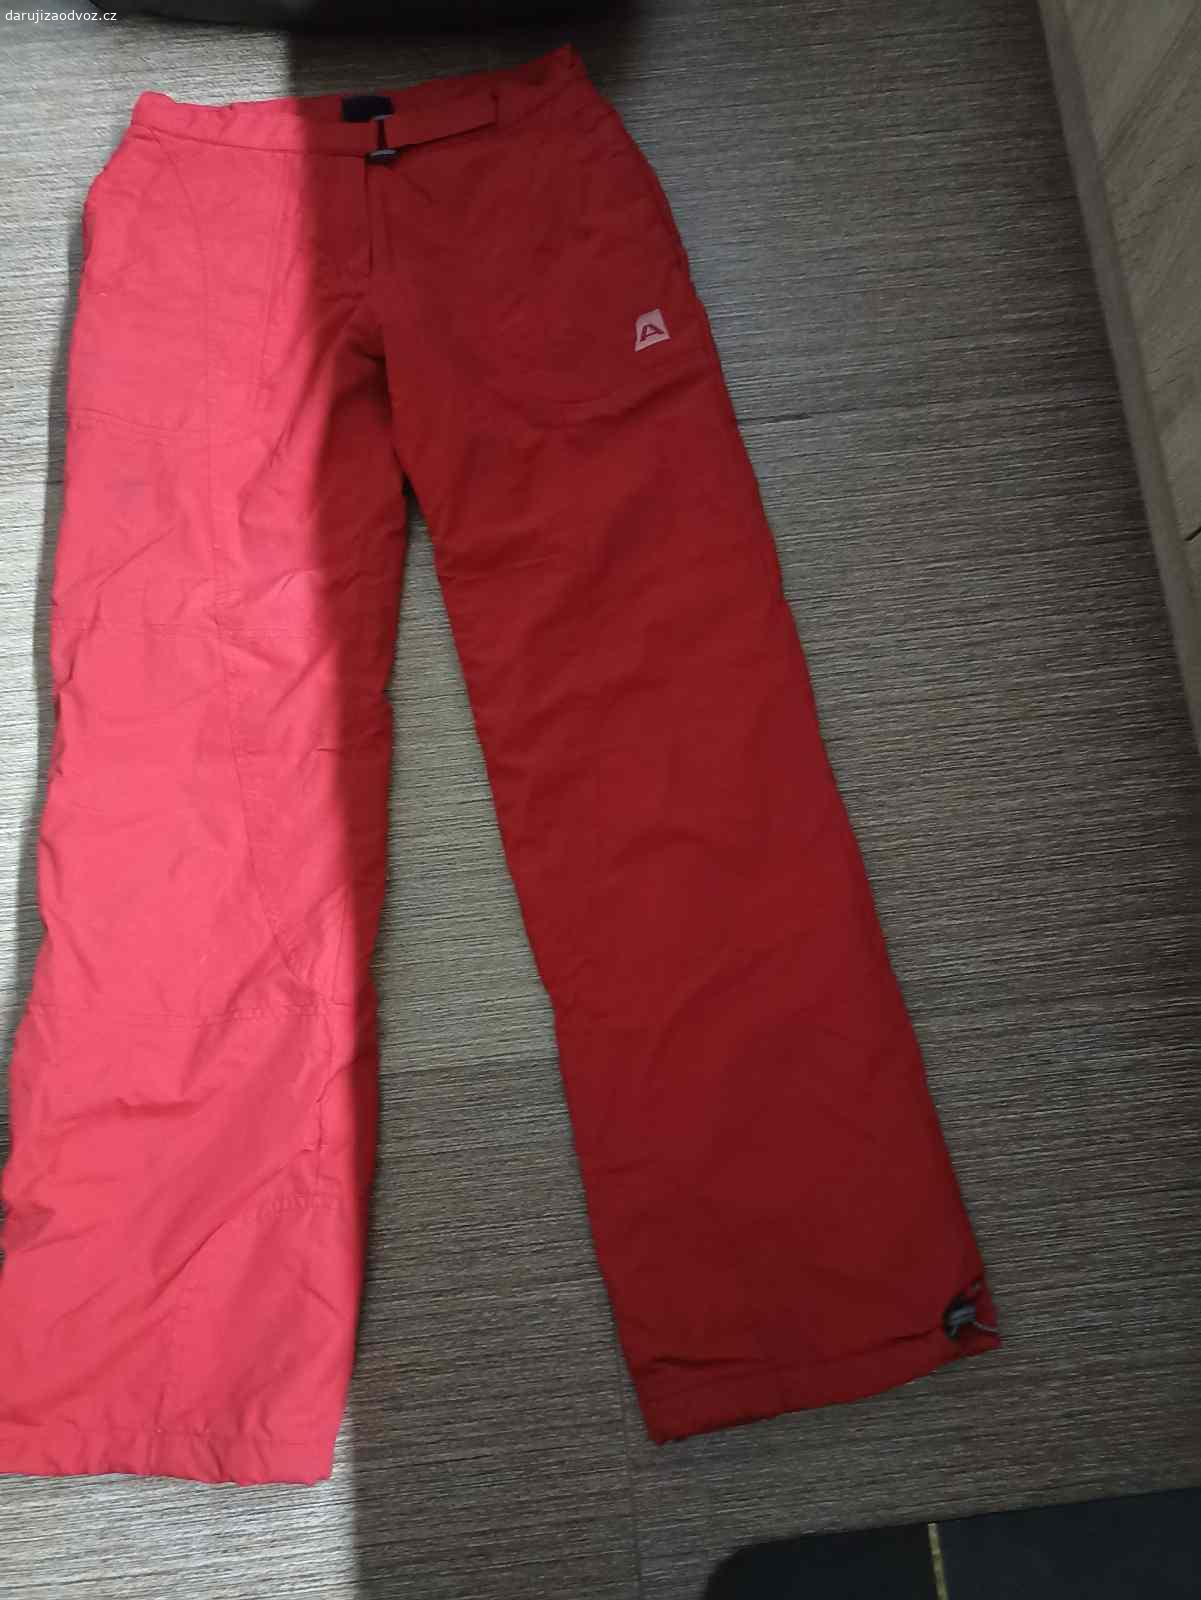 Lyžařské kalhoty-oteplovací. Červené lyžařské kalhoty velikosti S. Mohu zaslat za kód zásilkovny a 50 kč na balné a čas na zařízení poslání. Lze i osobně - za stírací los.